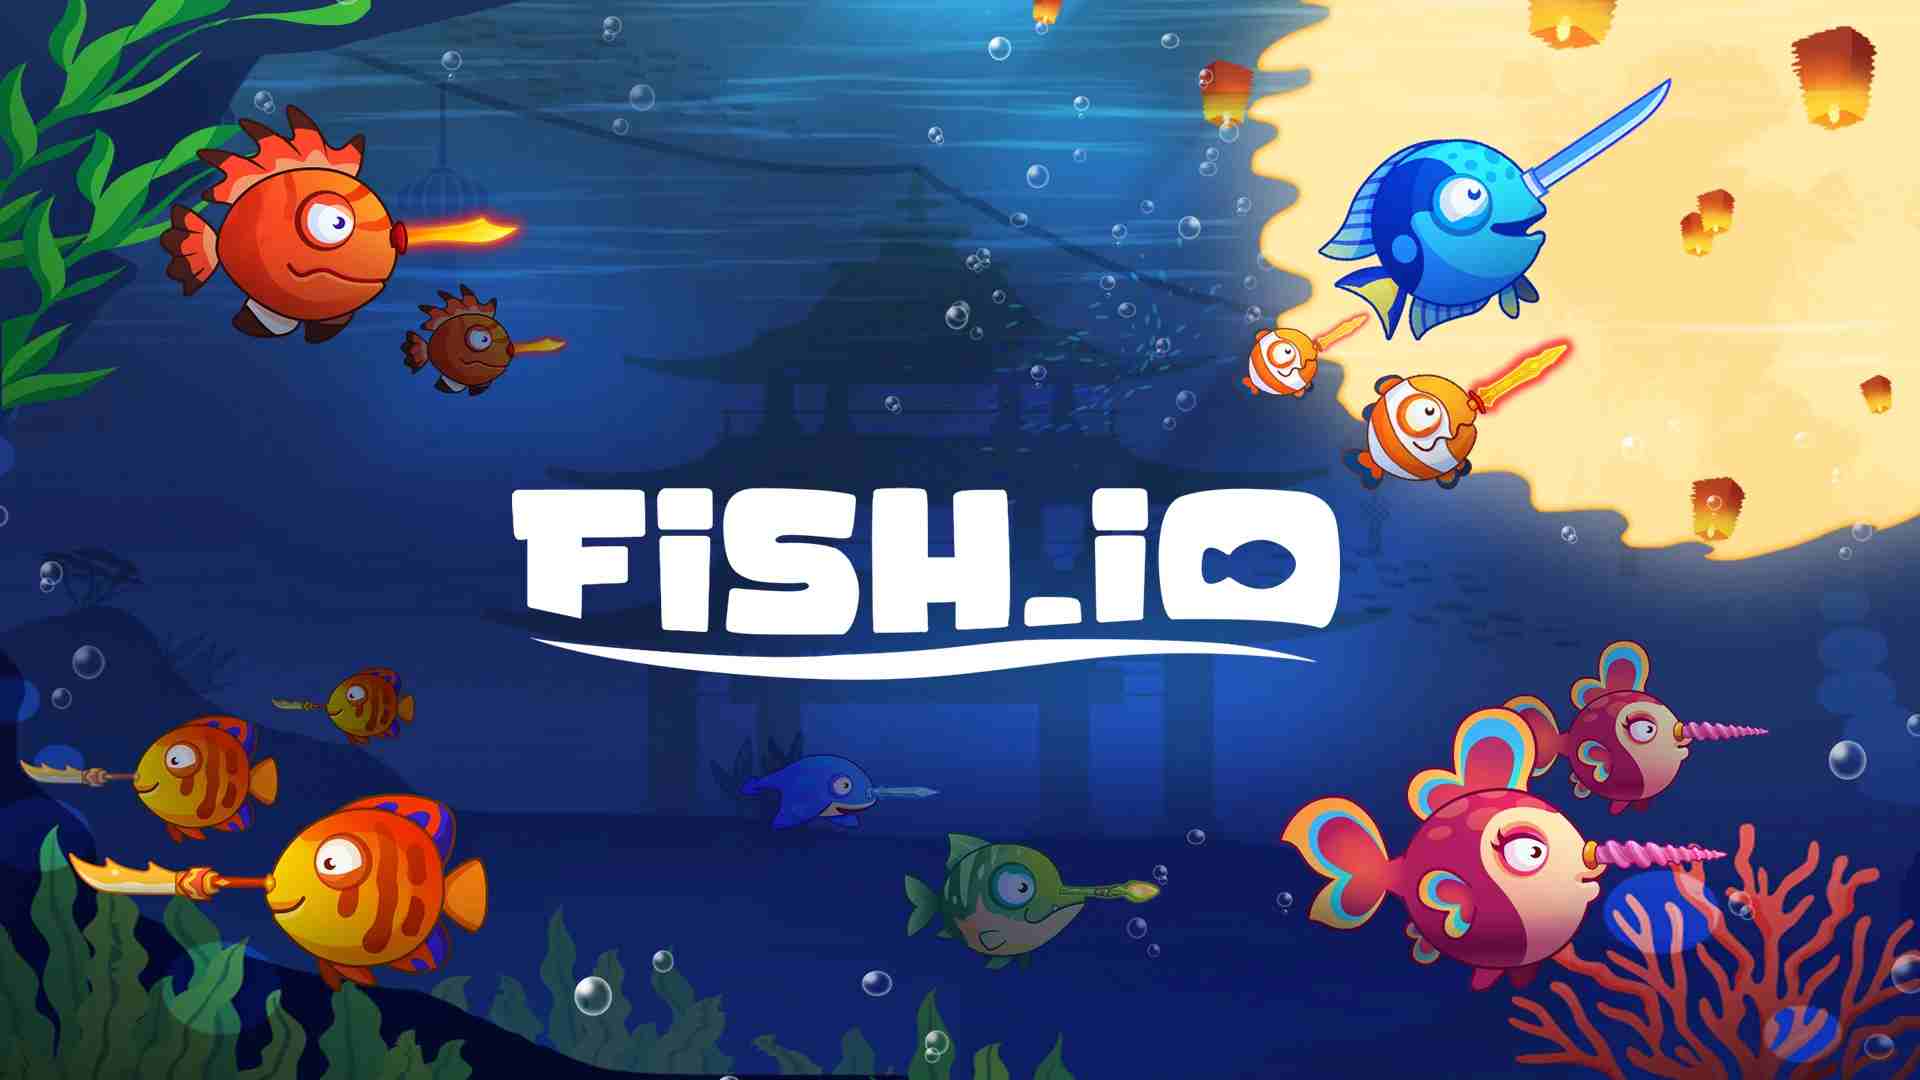 Fish.io 1.9.5 APK MOD [Huge Amount Of Energy]